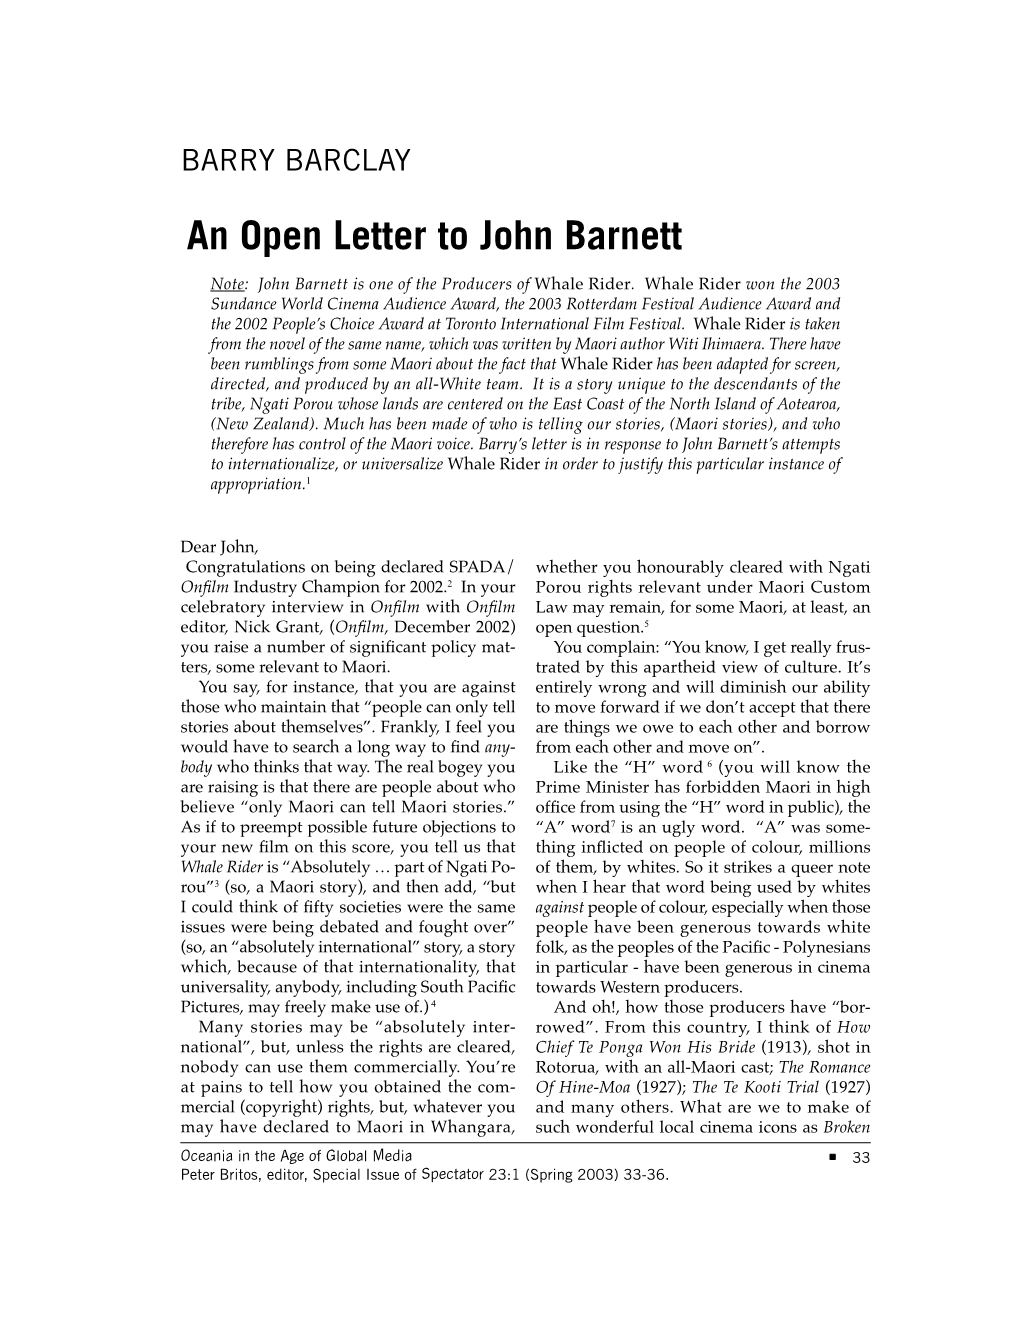 An Open Letter to John Barnett